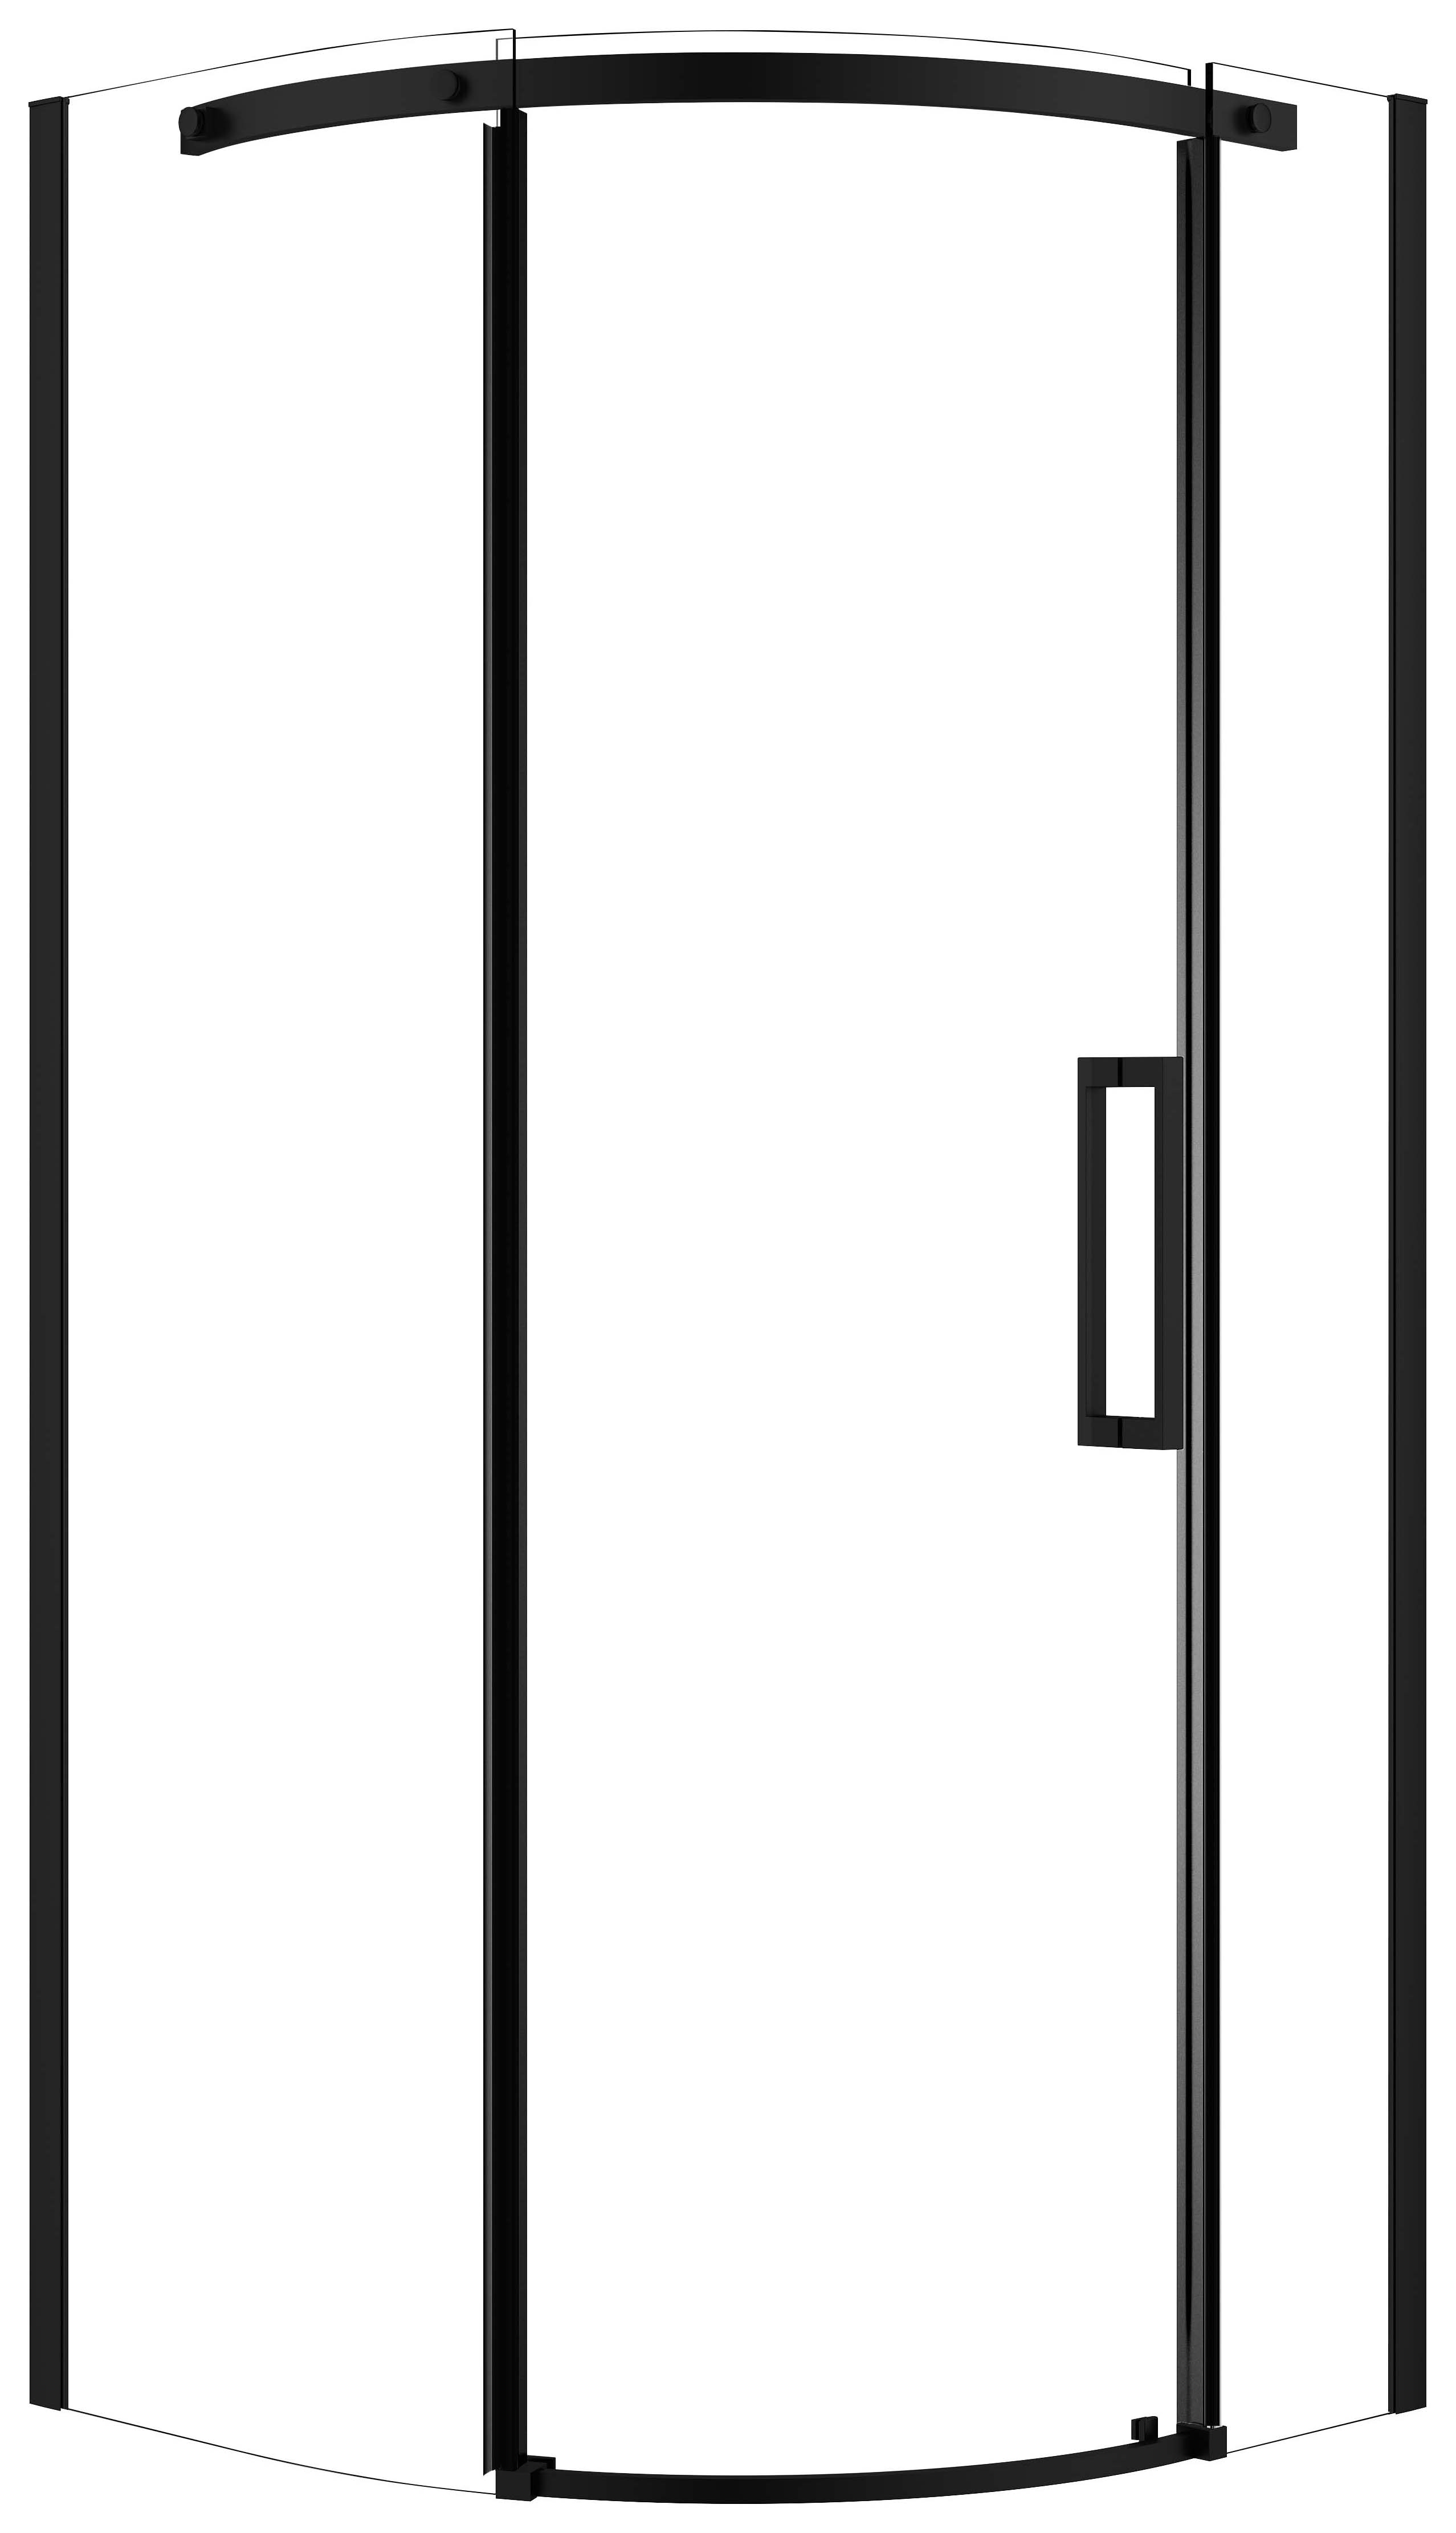 Nexa By Merlyn 8mm Black Frameless Quadrant Single Sliding Door Left Opening Shower Enclosure - 900 x 900mm